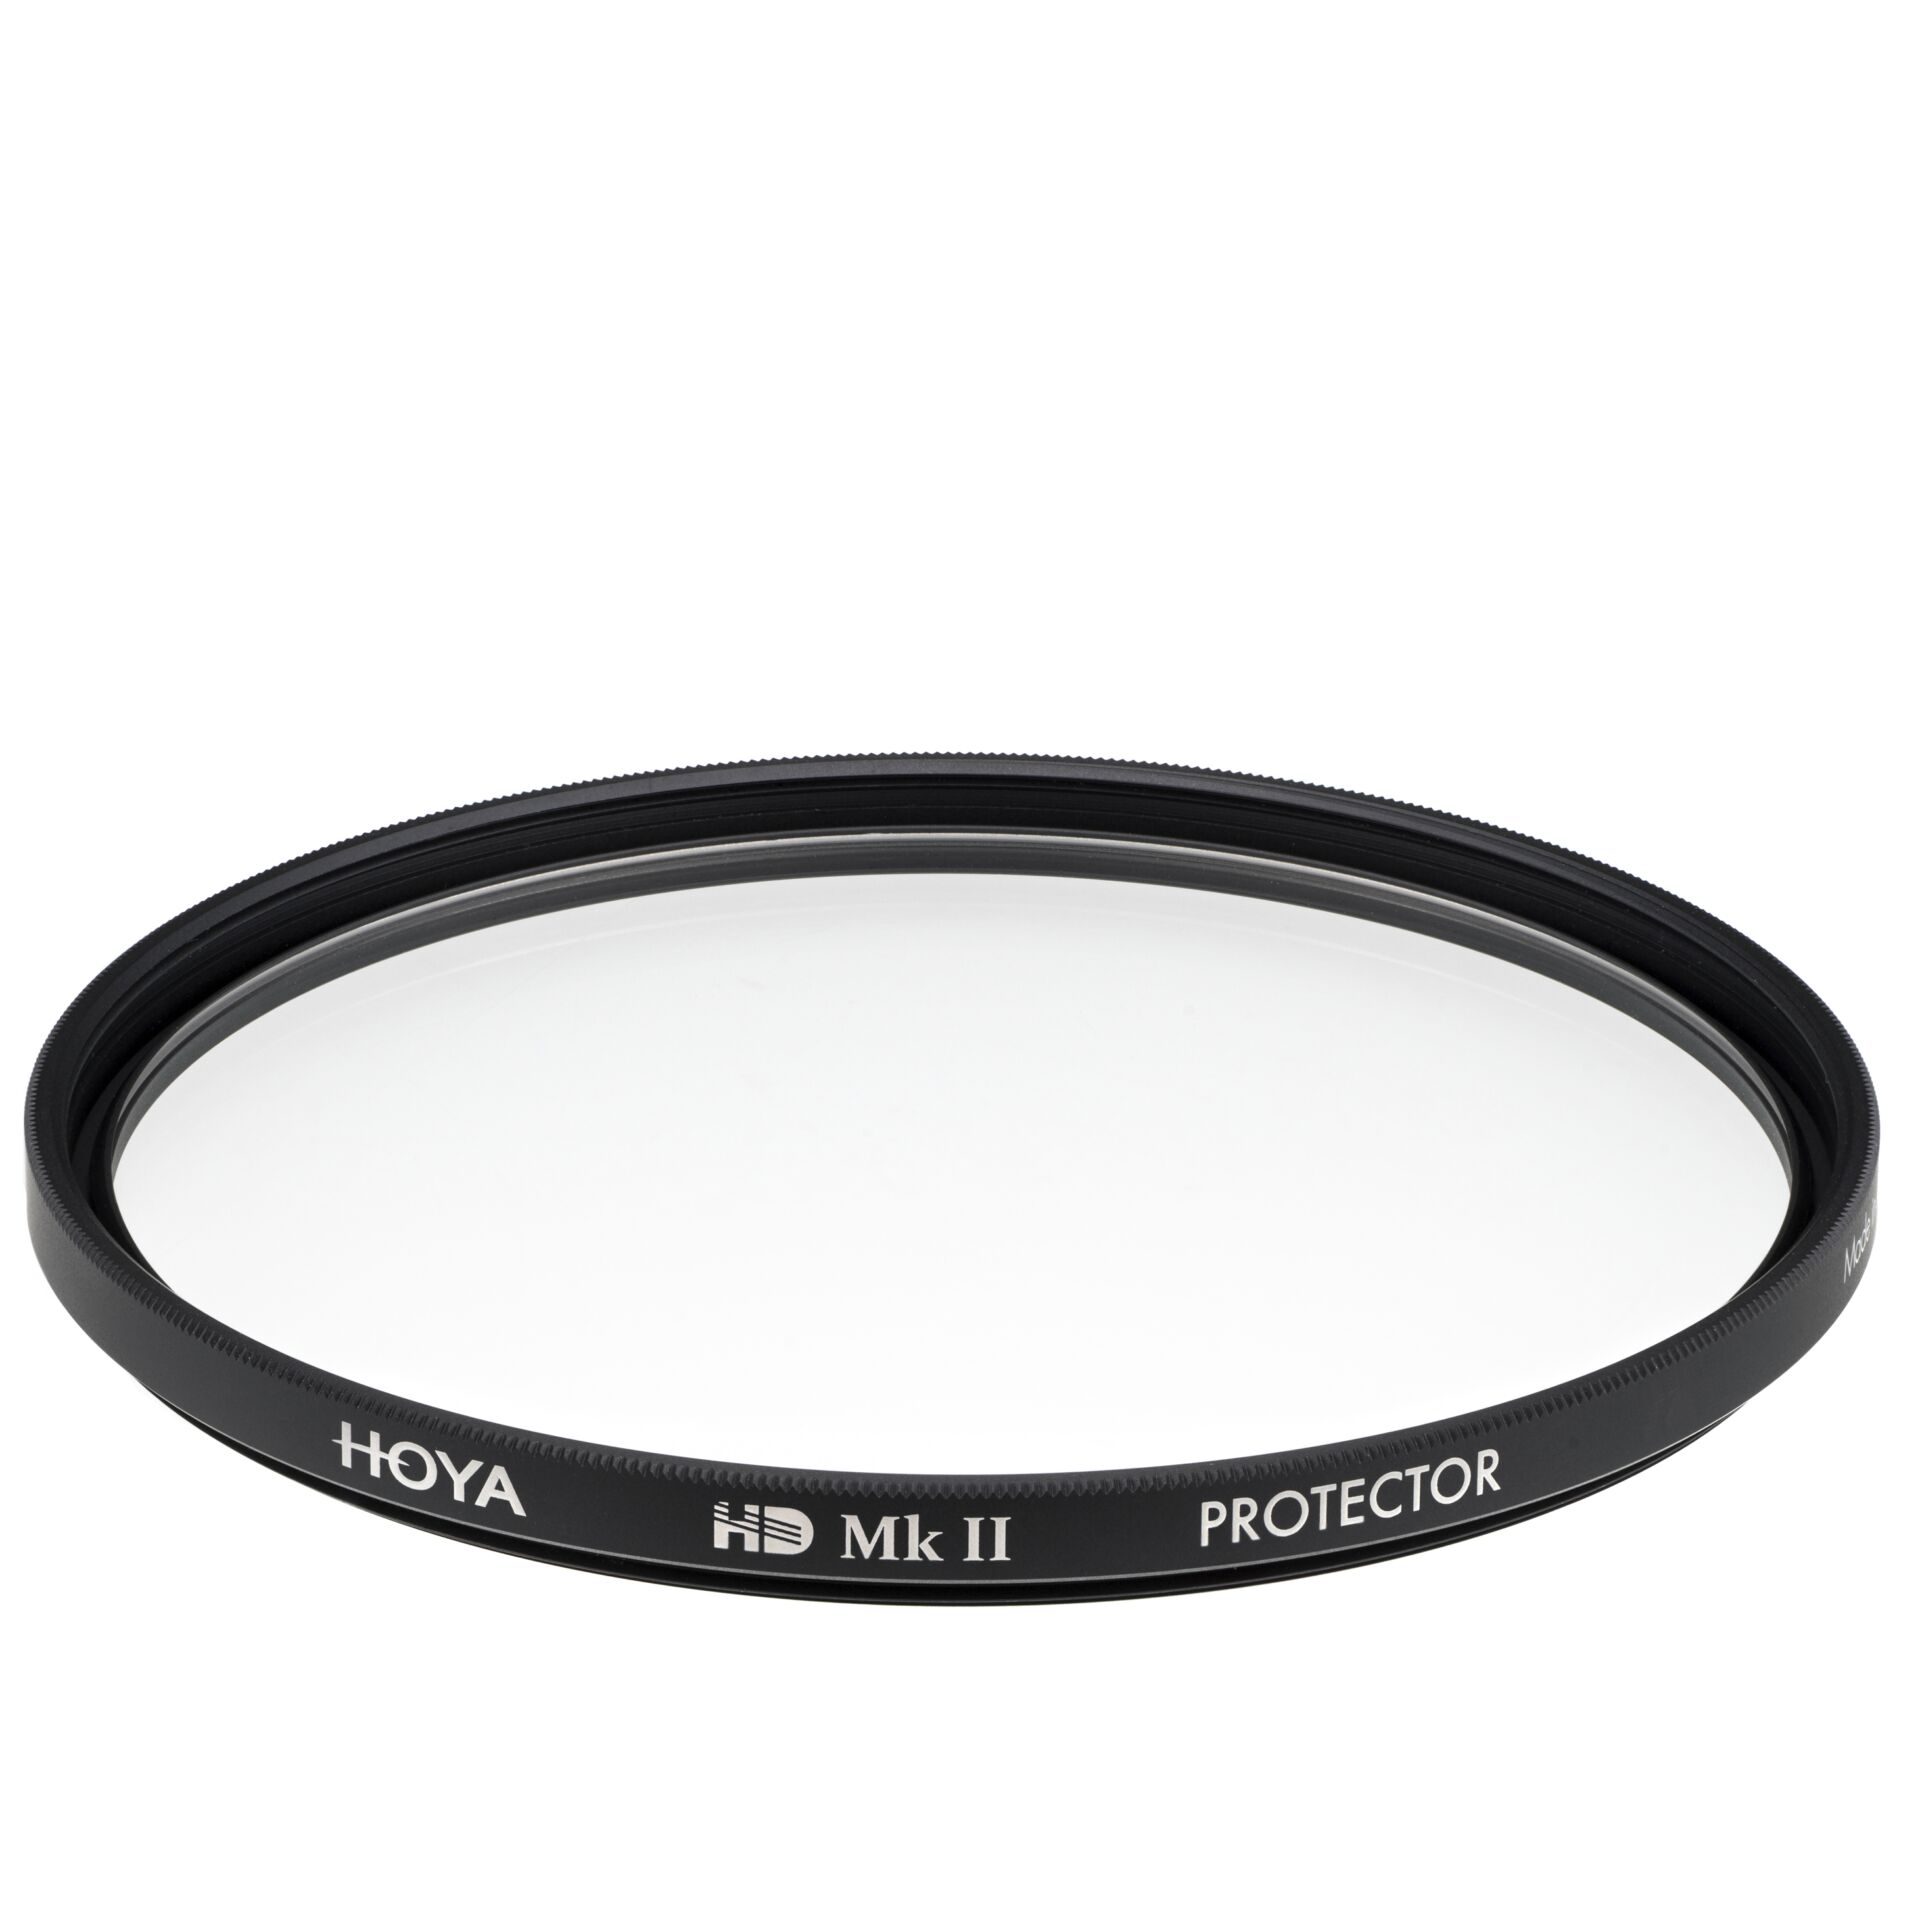 Hoya Protector HD Mk II 72mm